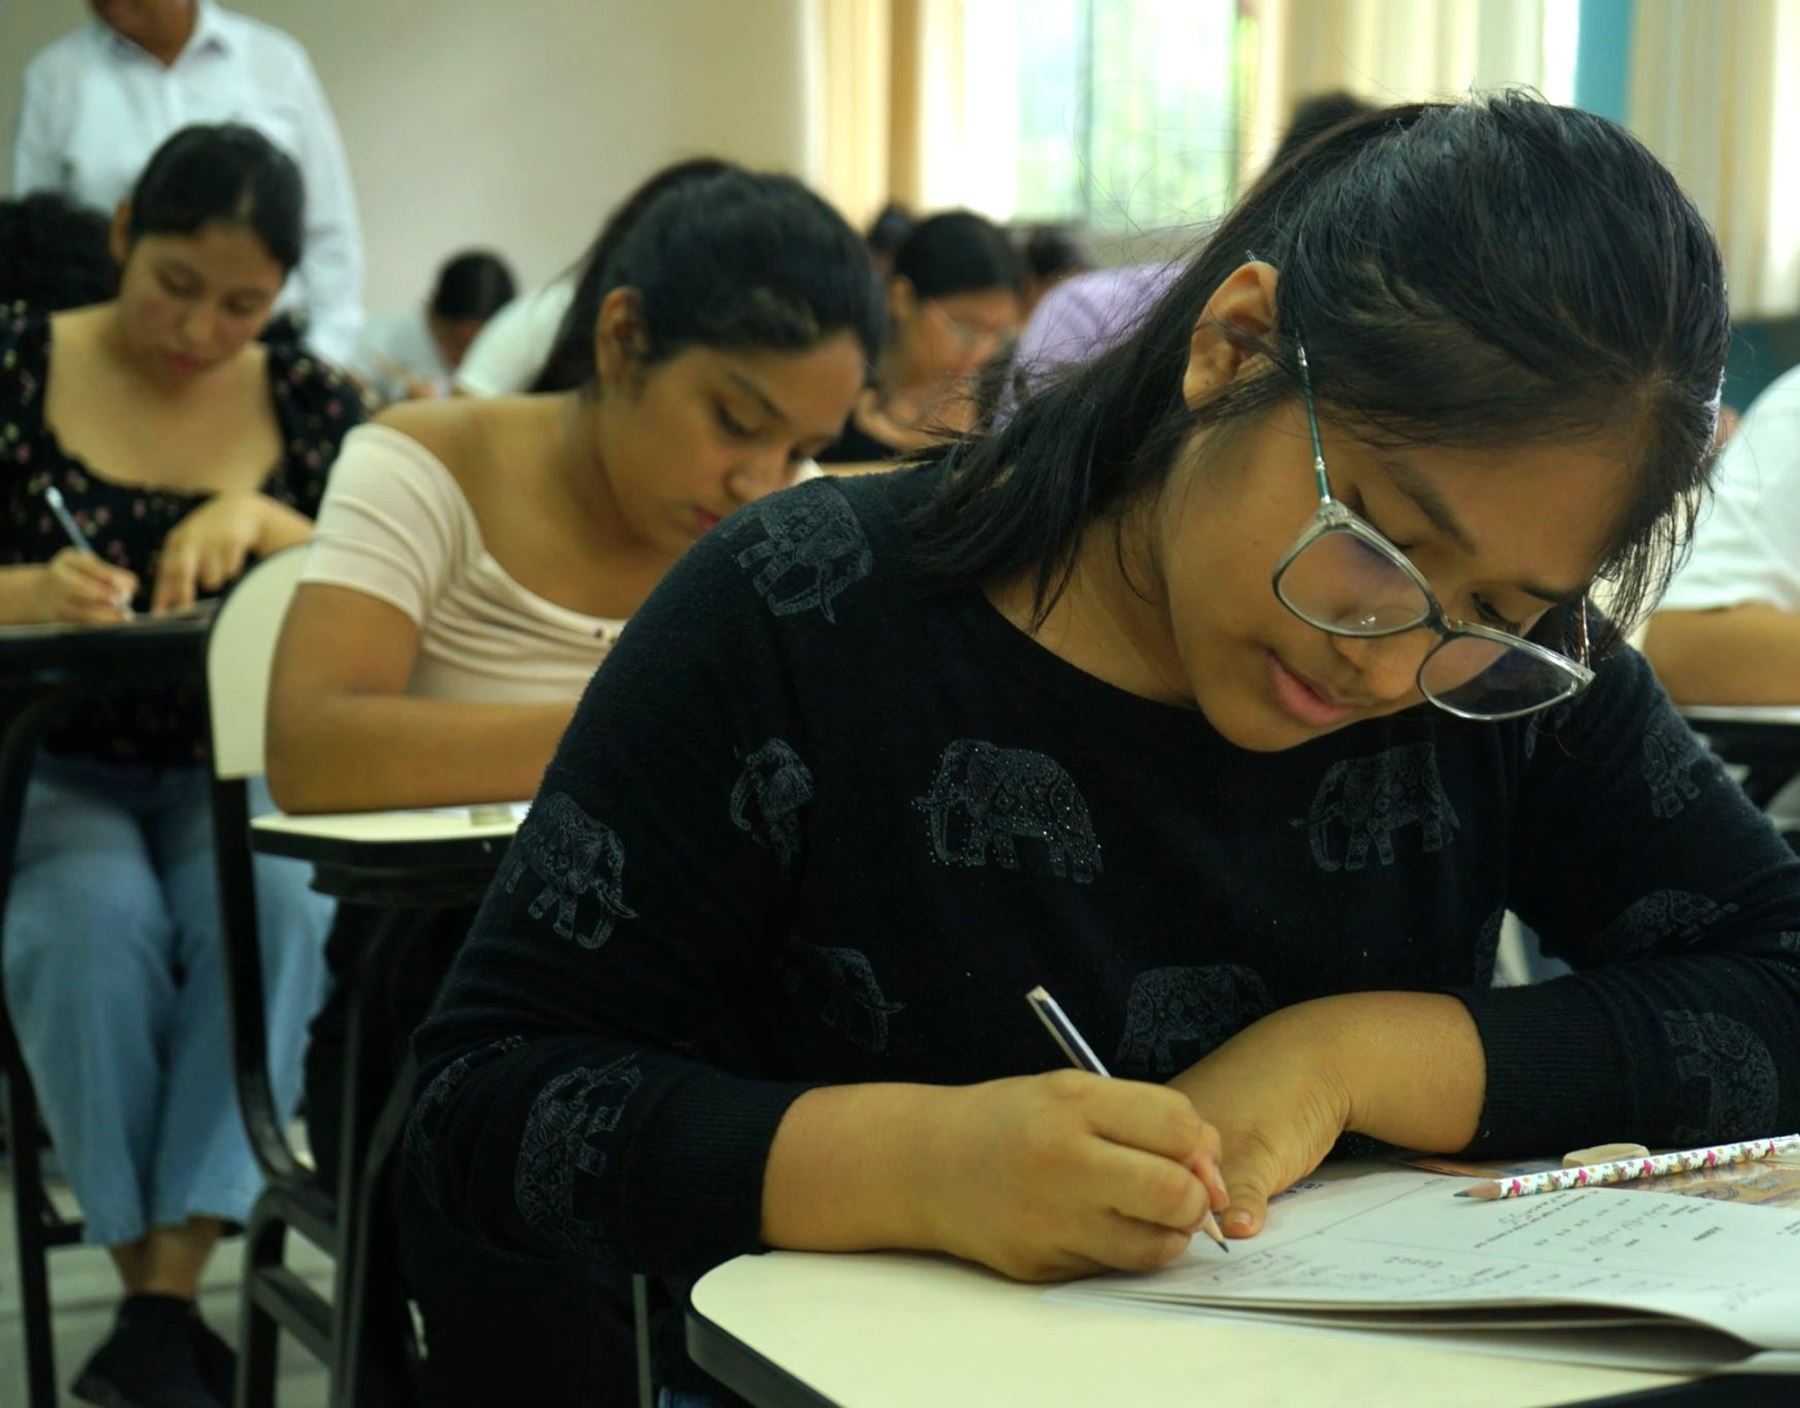 La Universidad Nacional de Piura dio a conocer los resultados del examen de admisión que se tomó ayer domingo 24 de marzo. ANDINA/Difusión